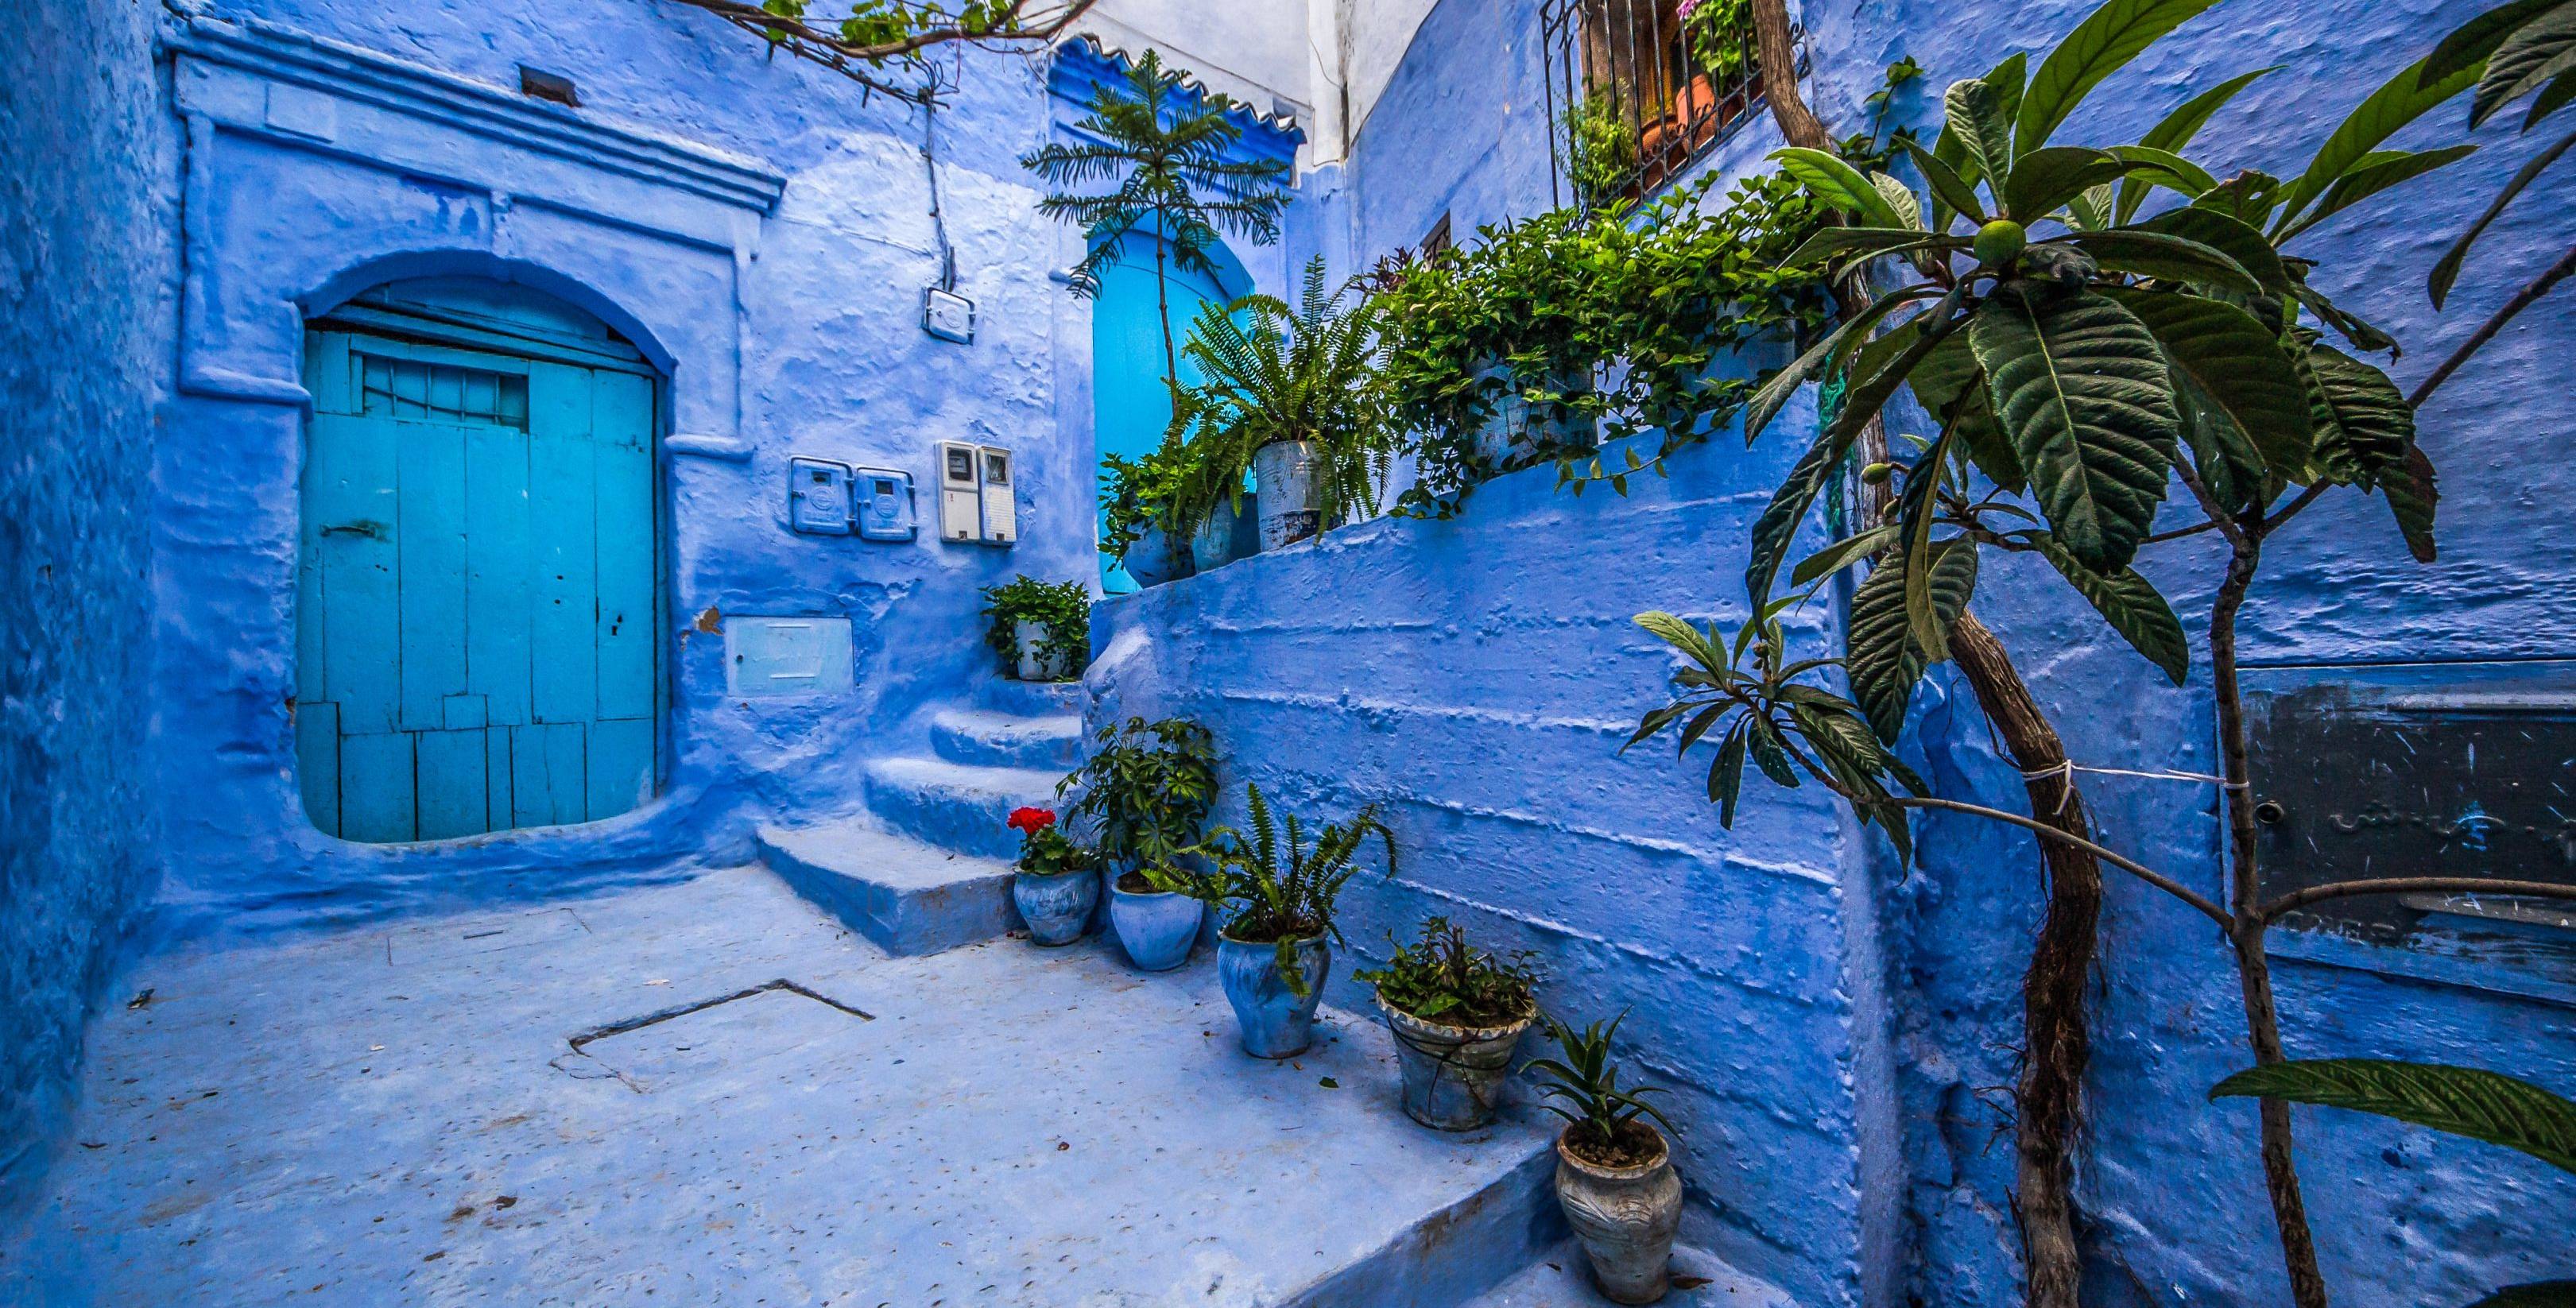 Desde la Tánger mitológica hacia la “Perla azul de Marruecos”